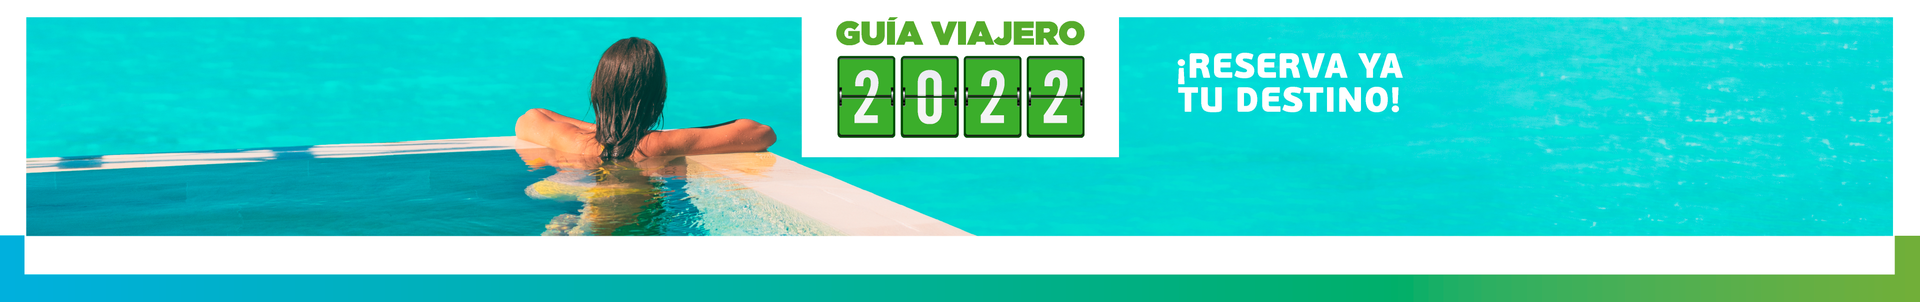 Guía viajero 2022 en Viajes Falabella reserva ya tu destino